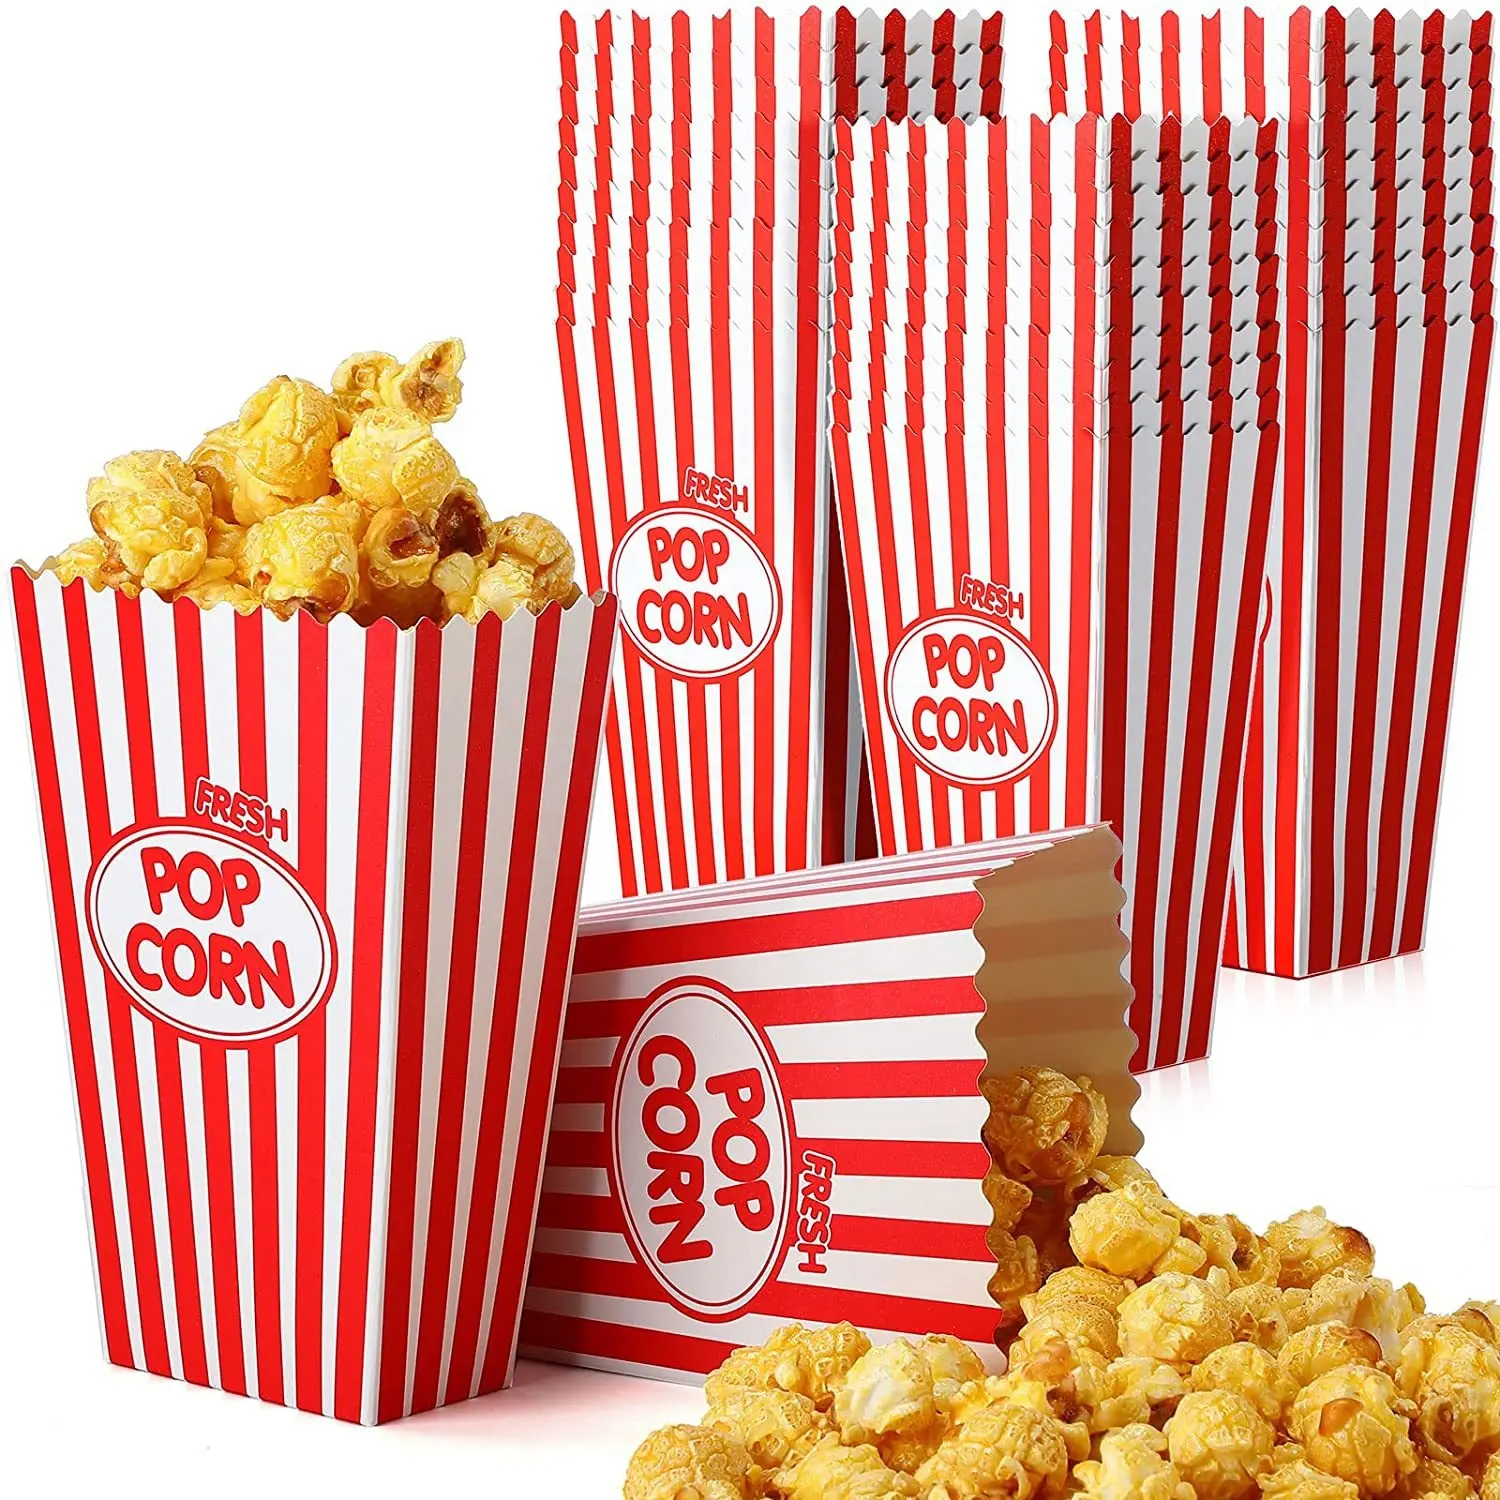 Groothandel Snacks Popcorn Zak Met Chips Snoep Brooddoos En Is Meer Geschikt Voor Magnetron Take-Out En Chips